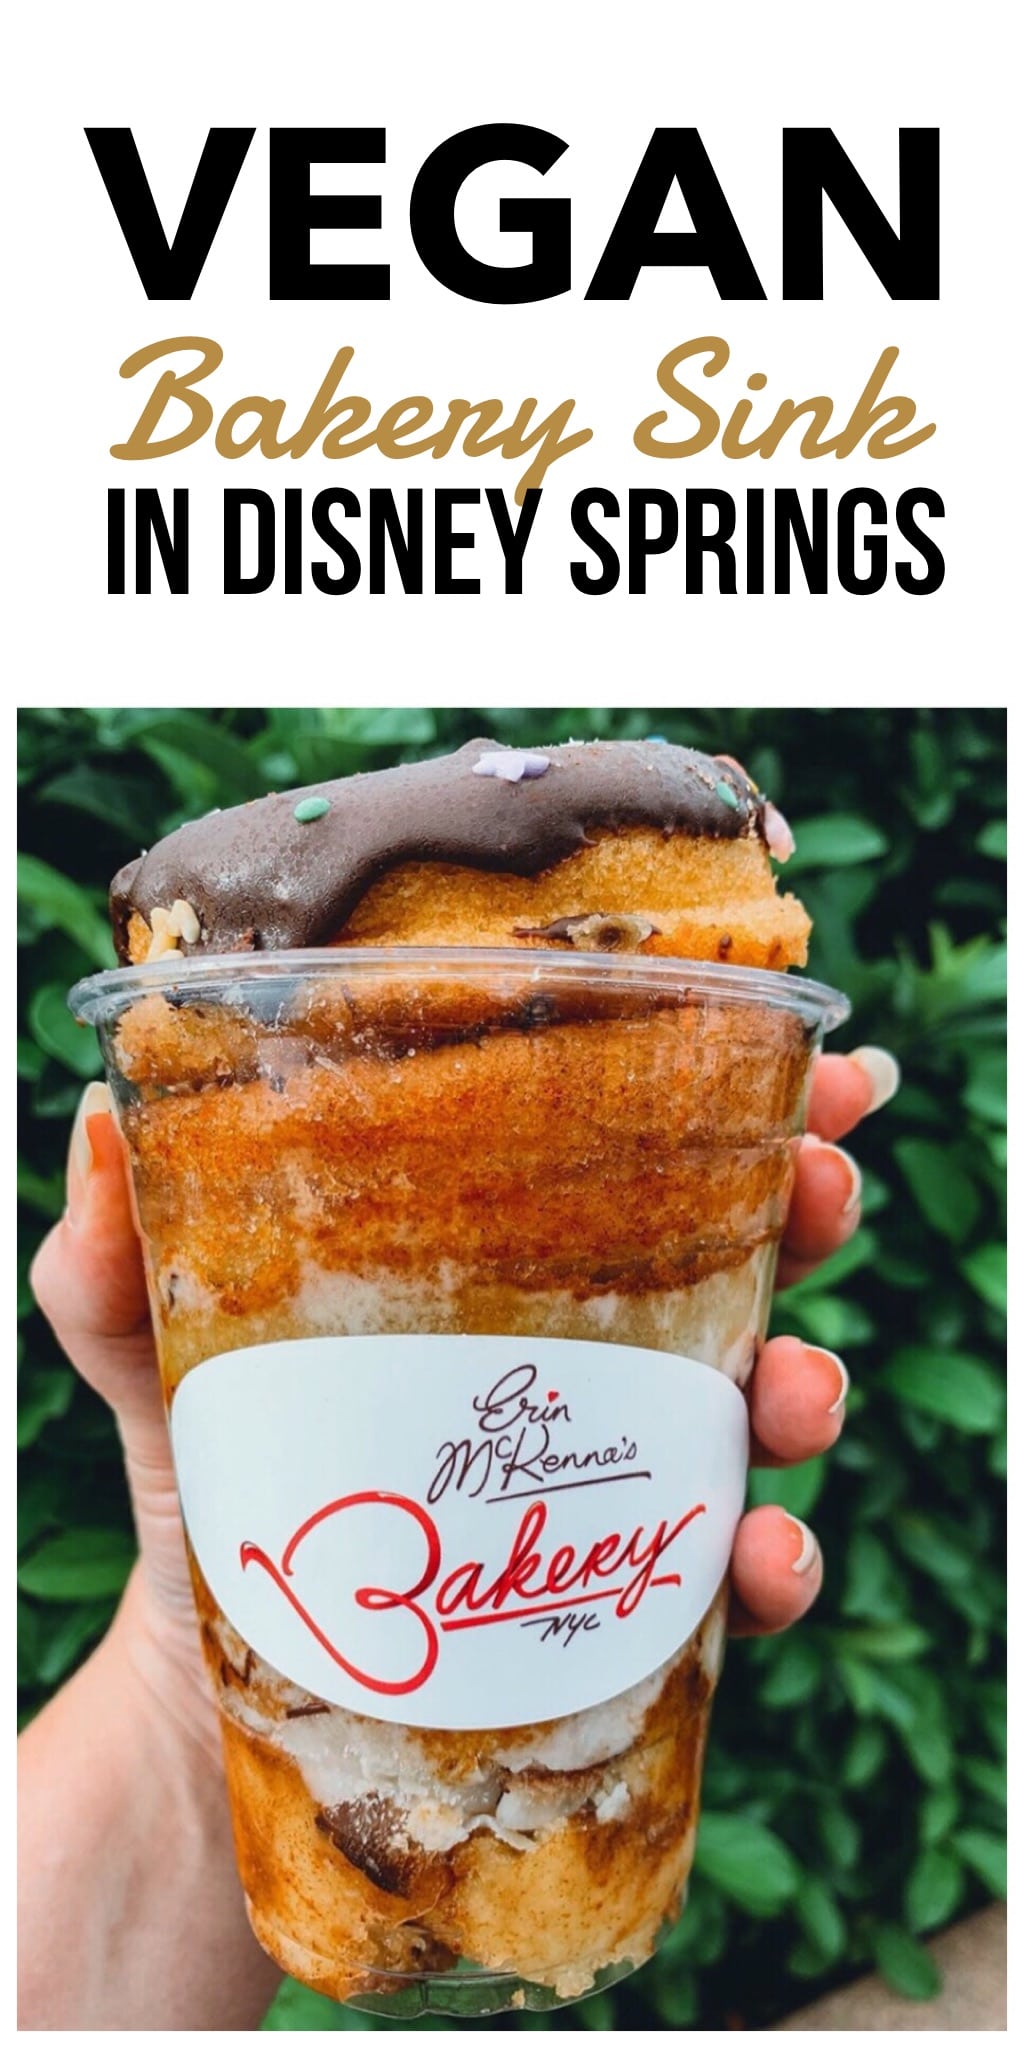 Vegan Bakery Sink Dessert Cup in Disney Springs at Walt Disney World